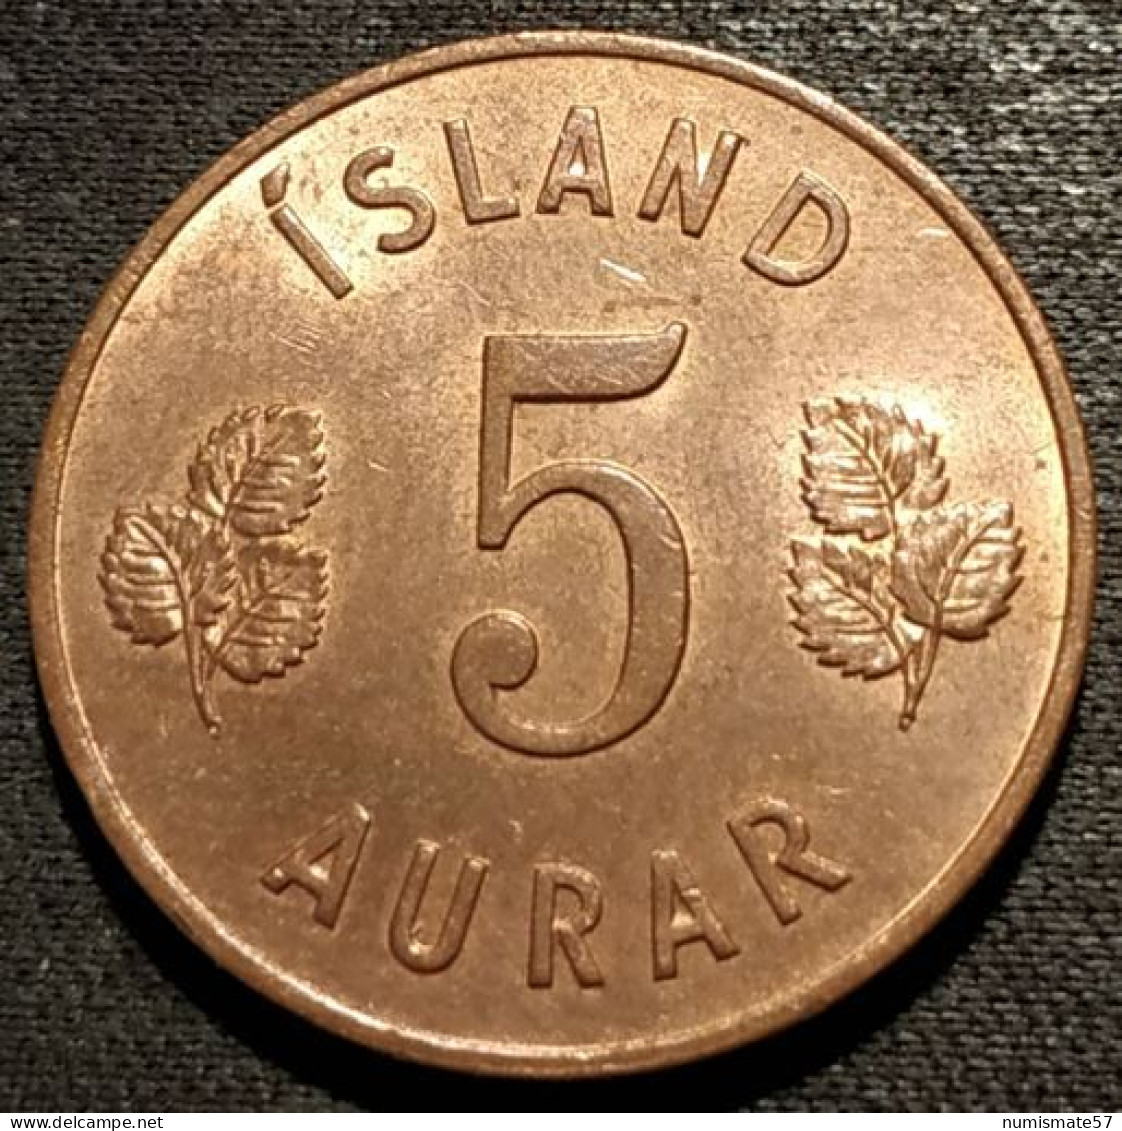 ISLANDE - ICELAND - 5 AURAR 1965 - KM 9 - ISLAND - Iceland